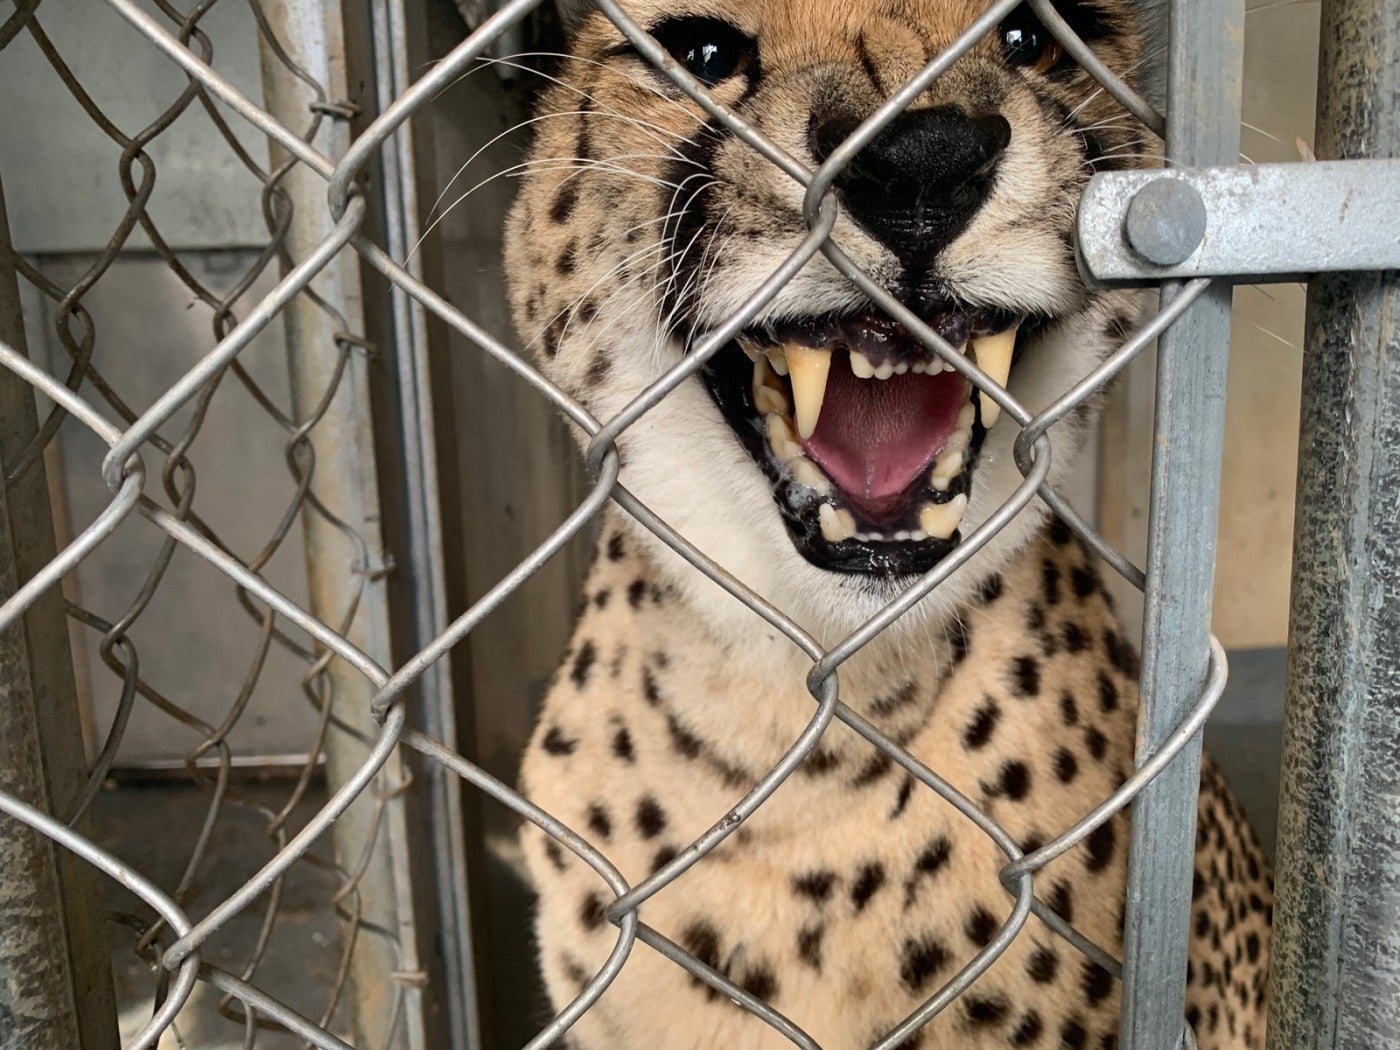 Cheetah Echo shows her teeth.